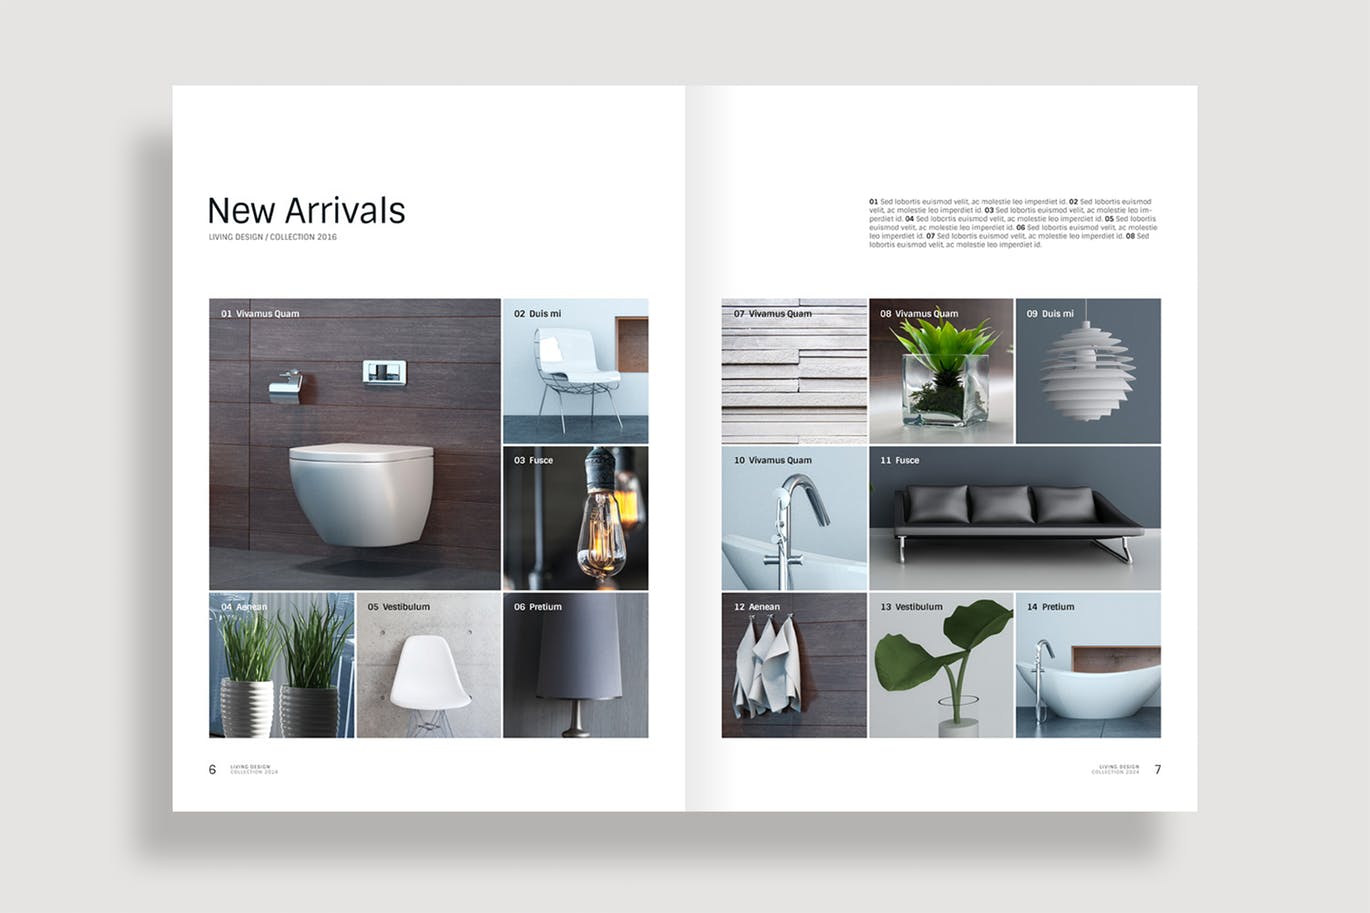 生活家居品牌产品目录/画册设计模板 Living Design – Product Catalog Template插图(3)